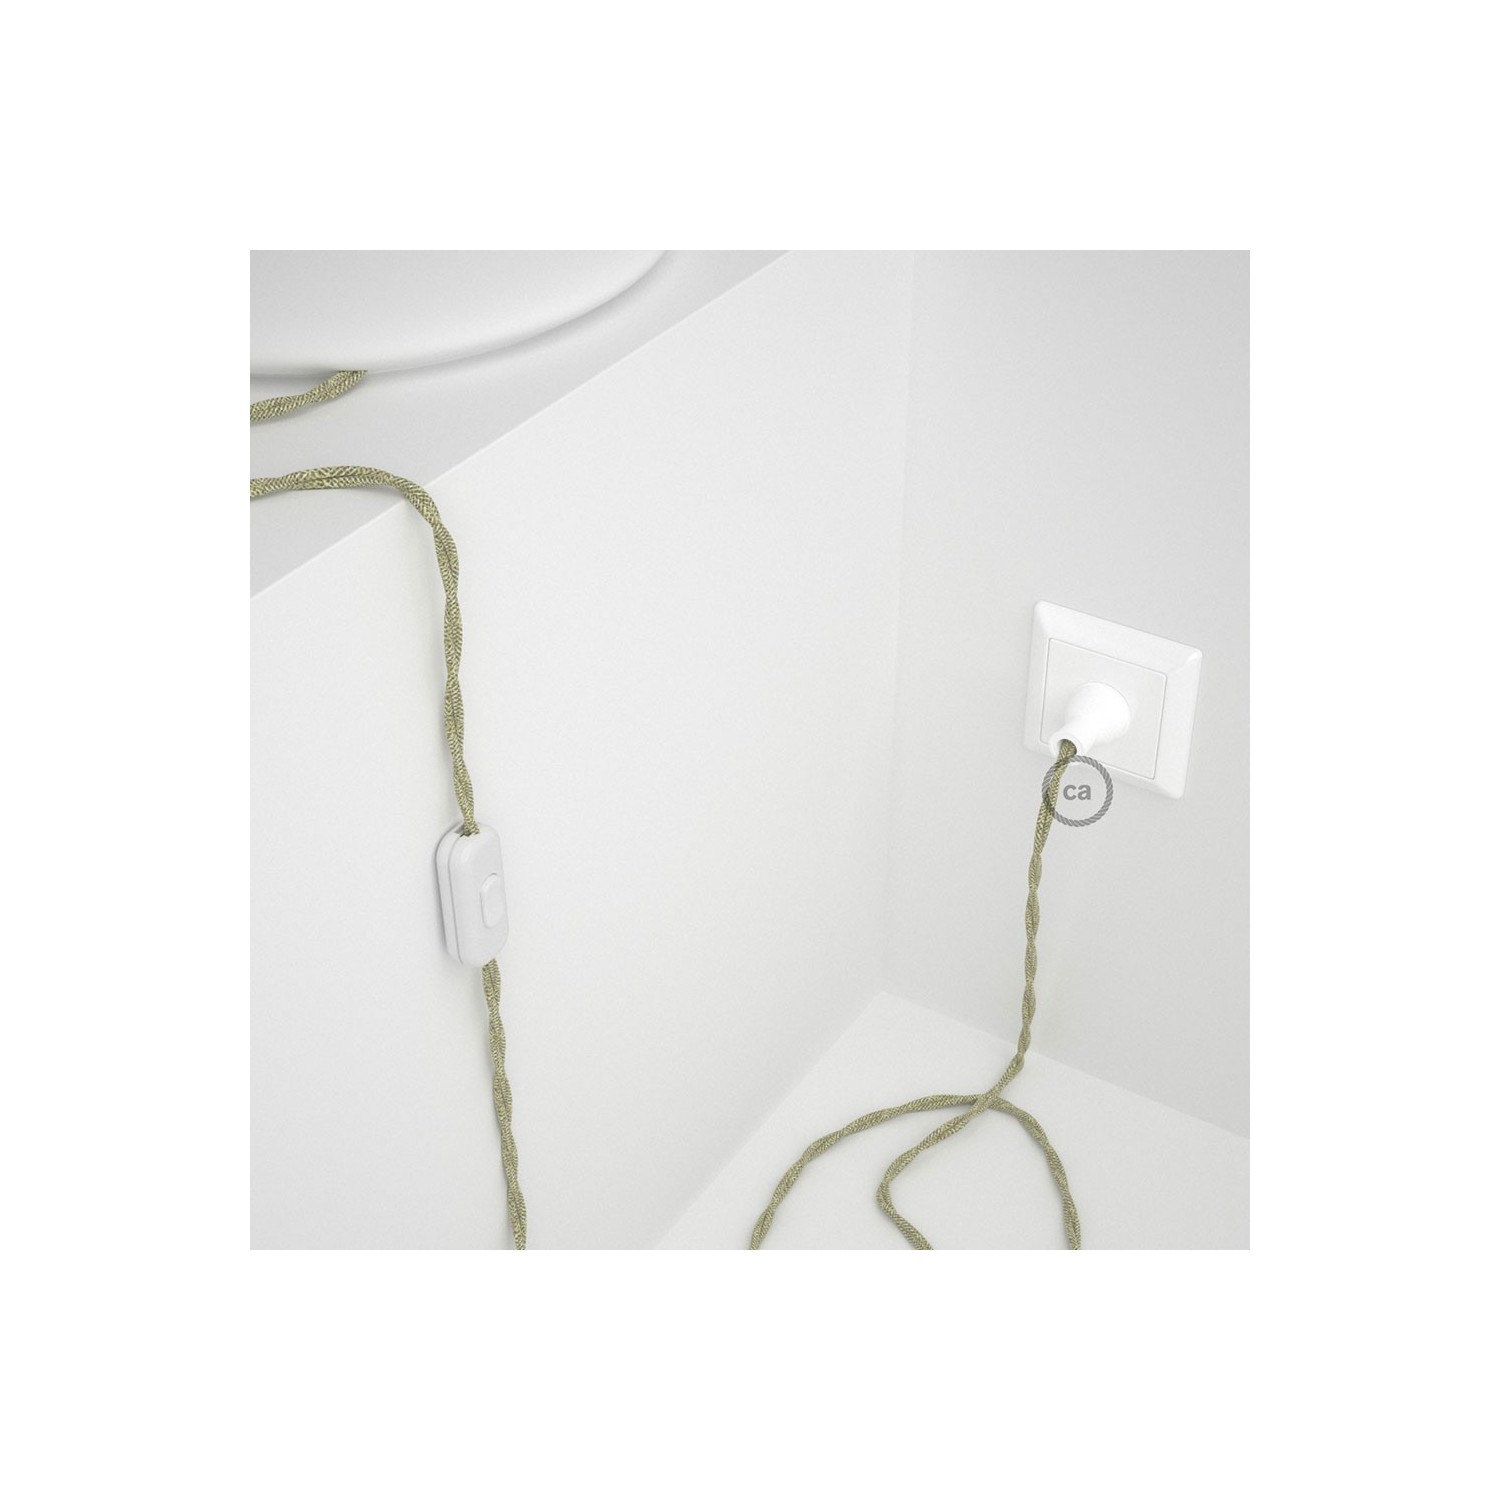 Cableado para lámpara de mesa, cable TN01 Lino Natural Neutro 1,8 m. Elige el color de la clavija y del interruptor!